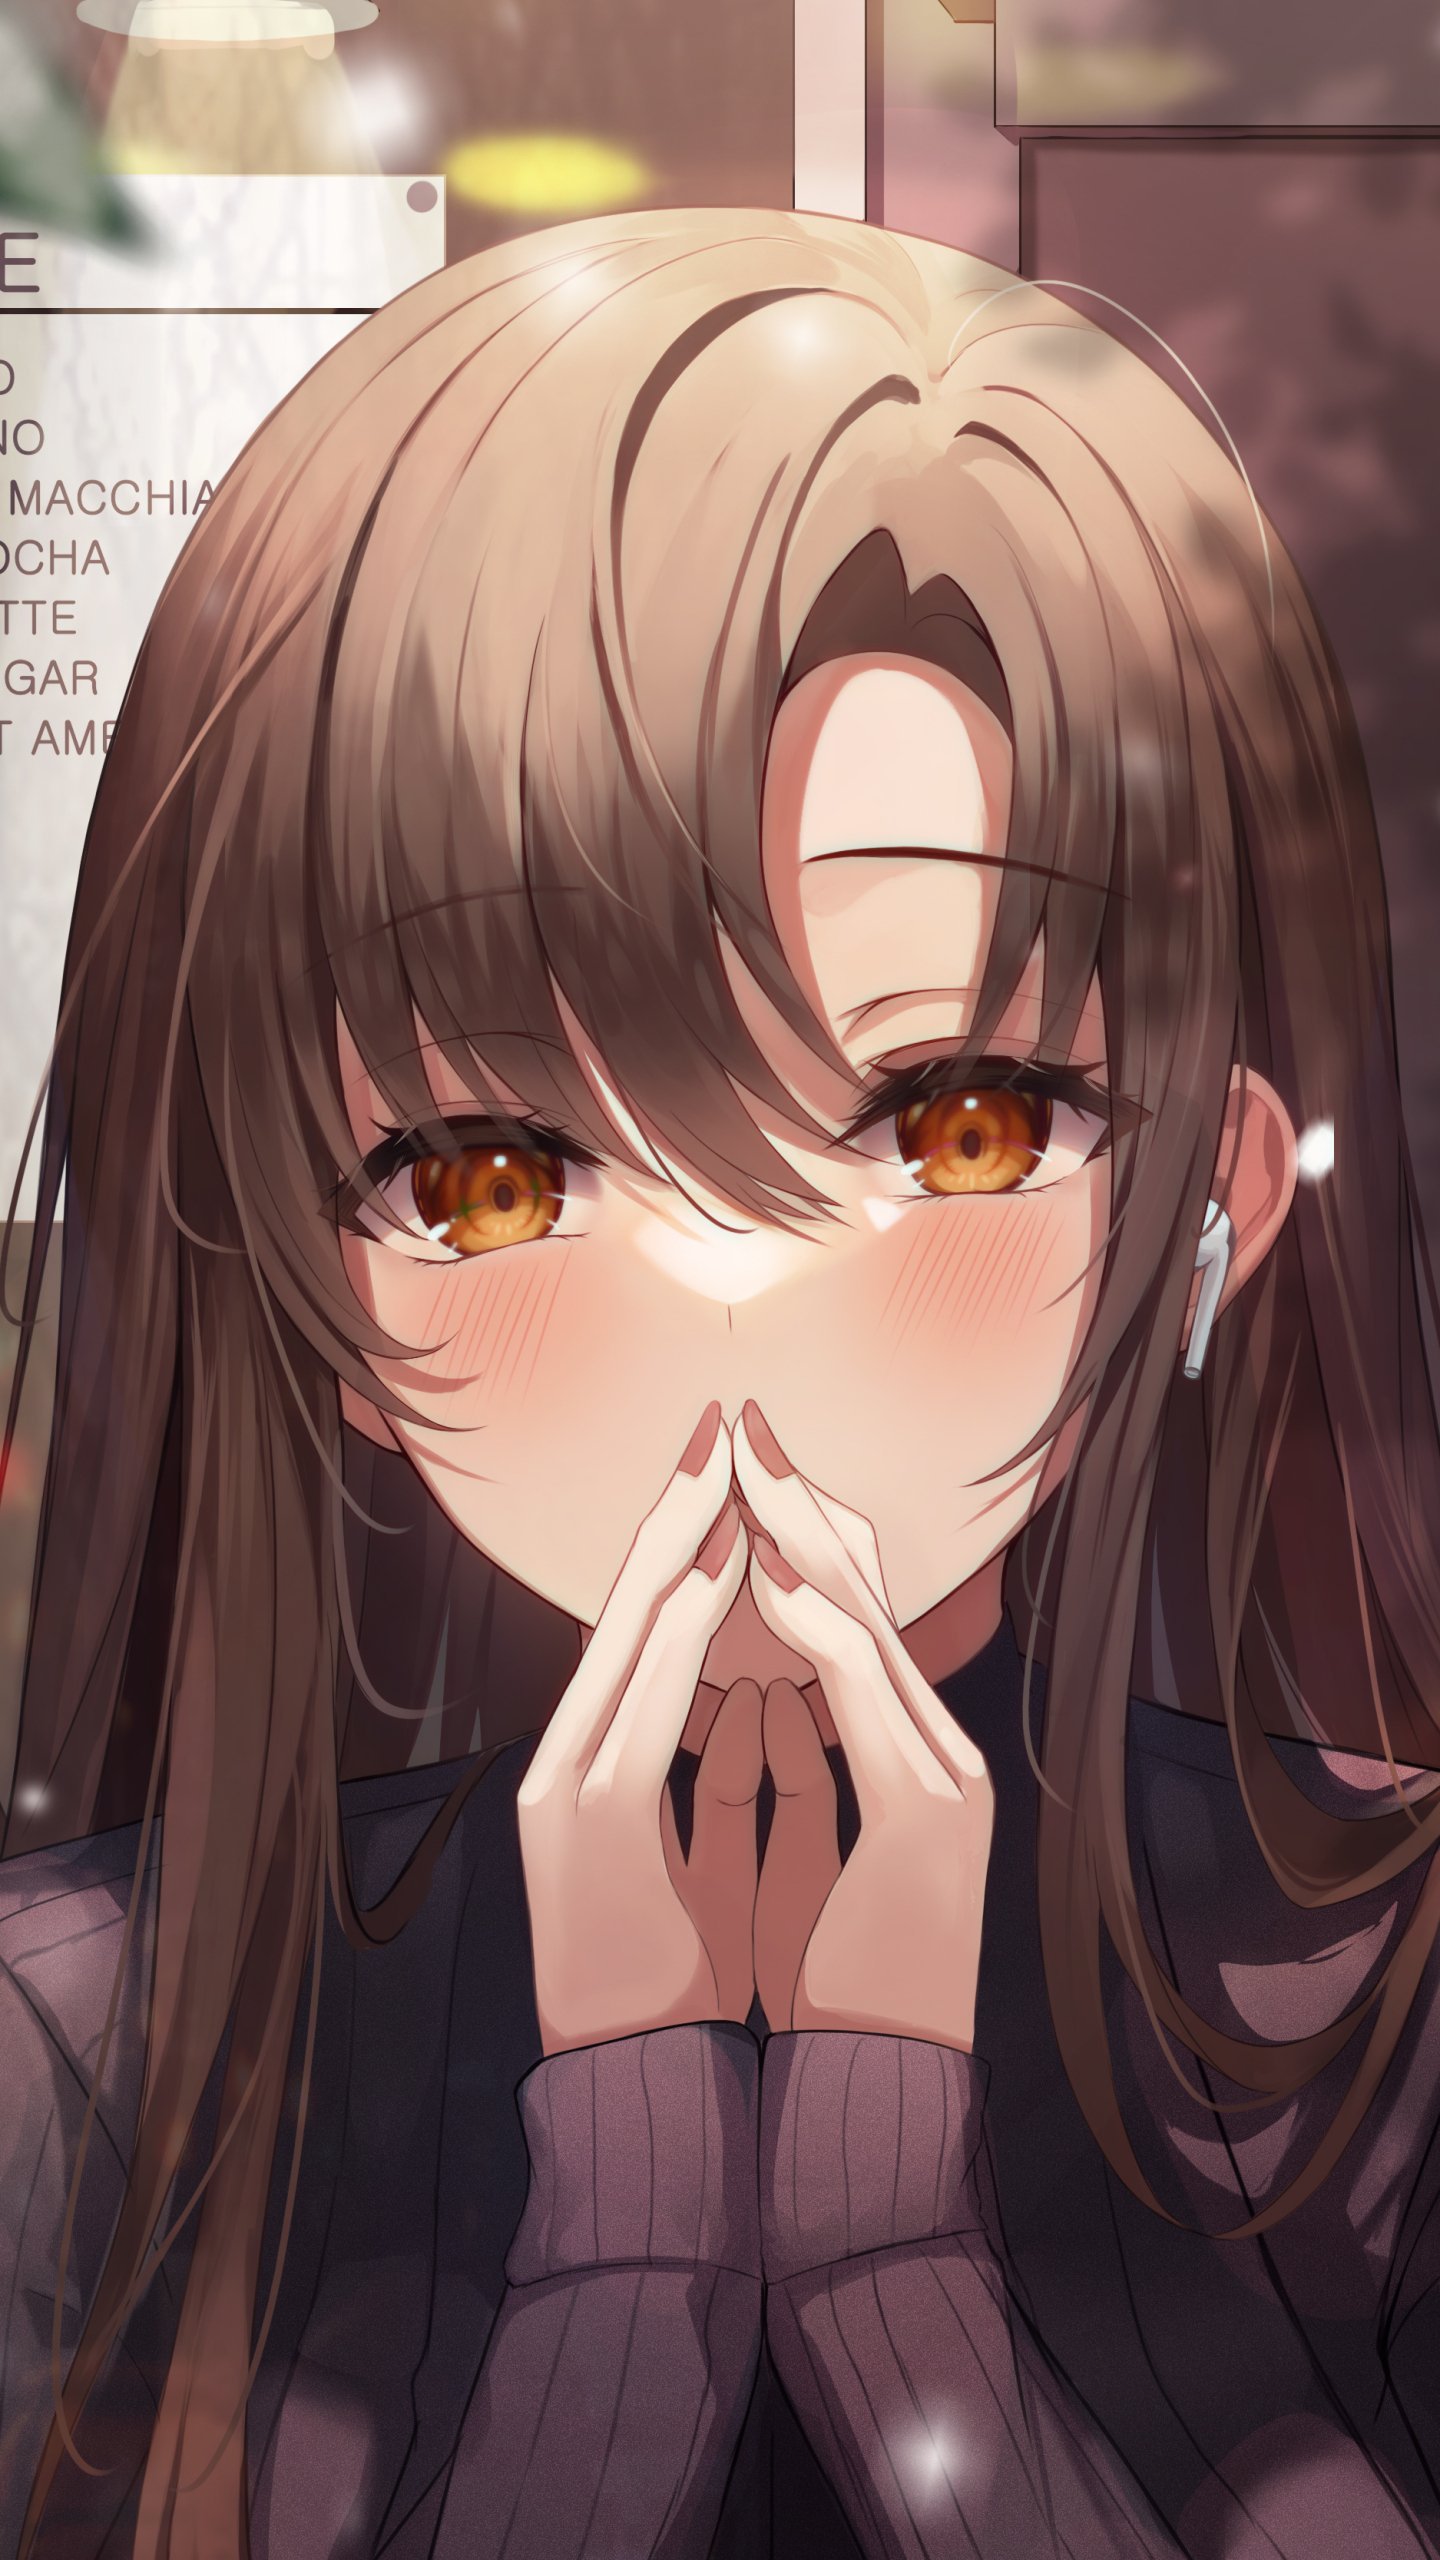 Sad Anime Girl Wallpaper Download | MobCup